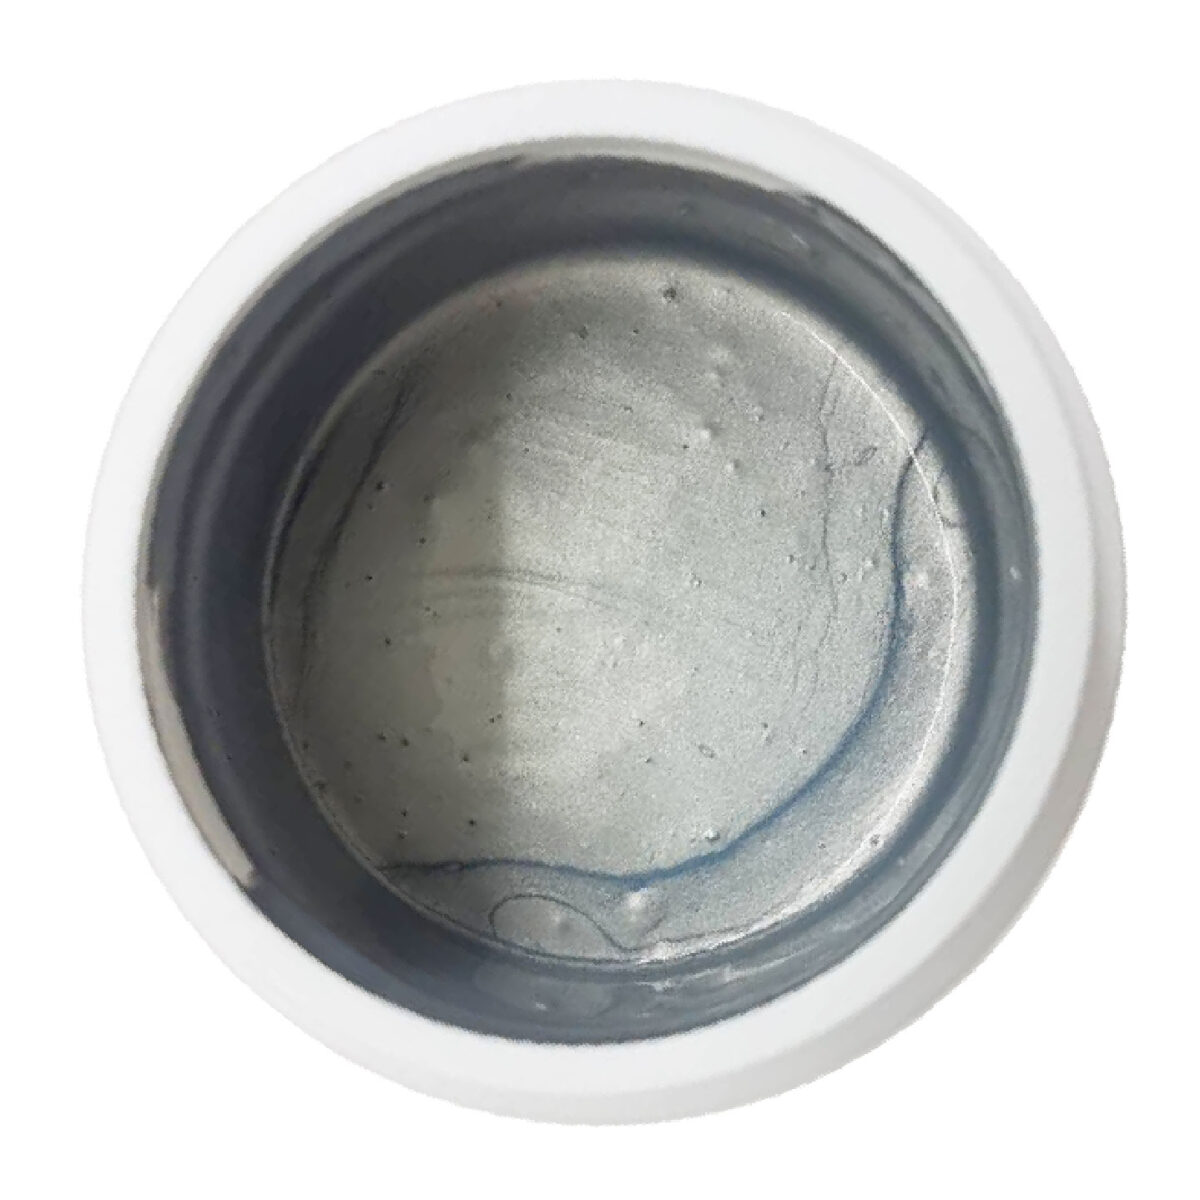 tubiscreen silver (silver rubber dye) 1kg set